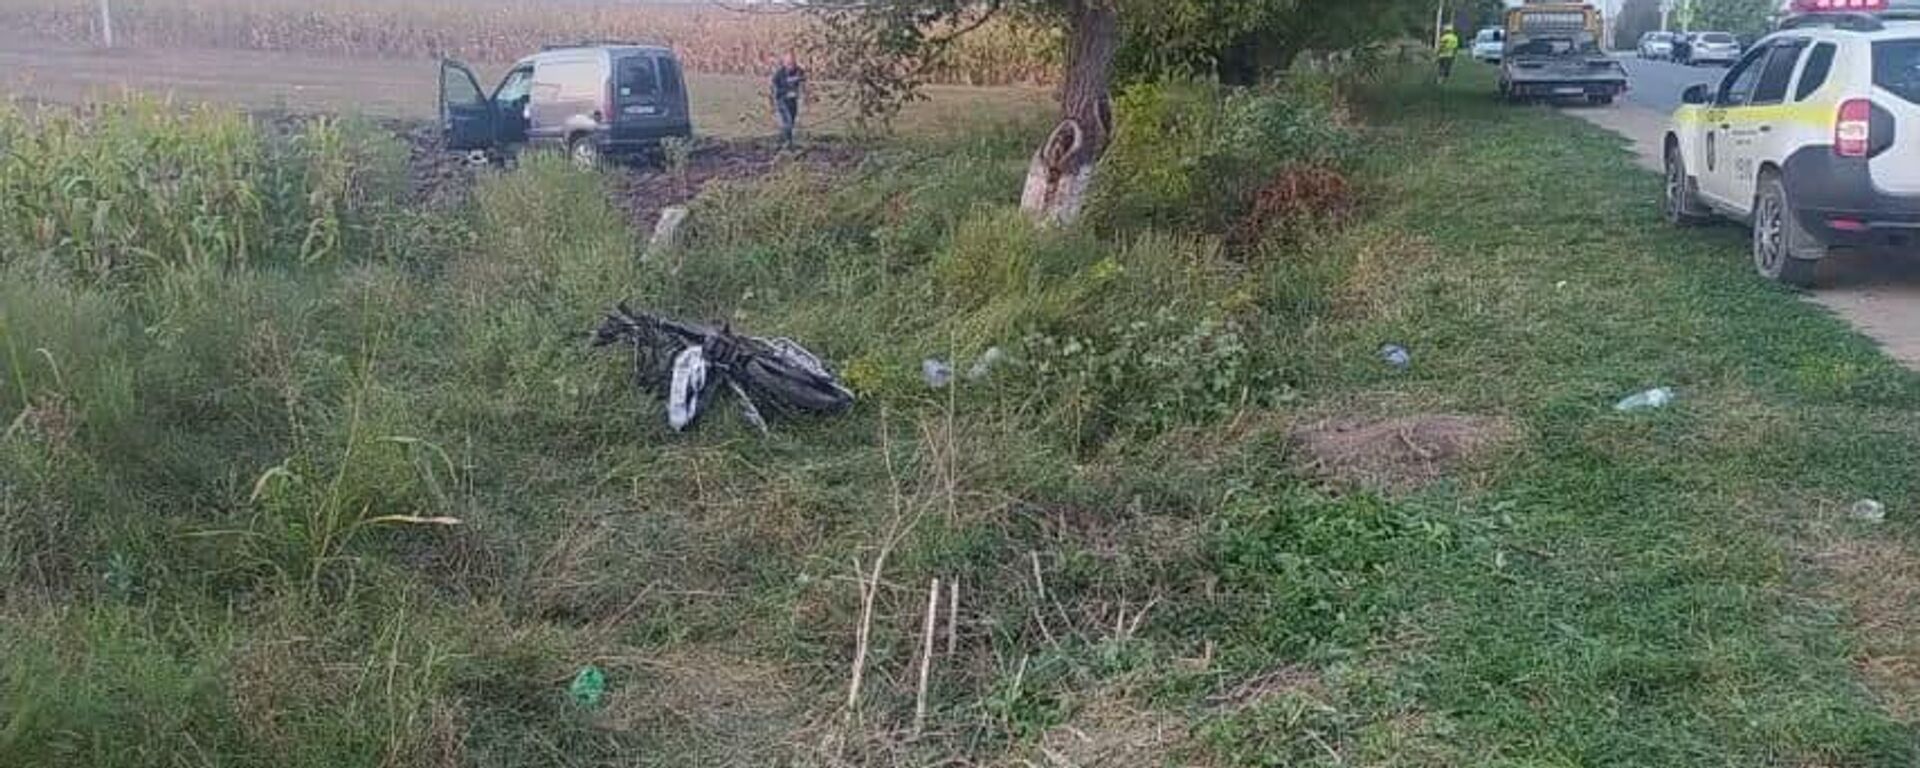 Accident grav în Anenii Noi: Motociclistul minor a murit pe loc  - Sputnik Moldova, 1920, 13.09.2021